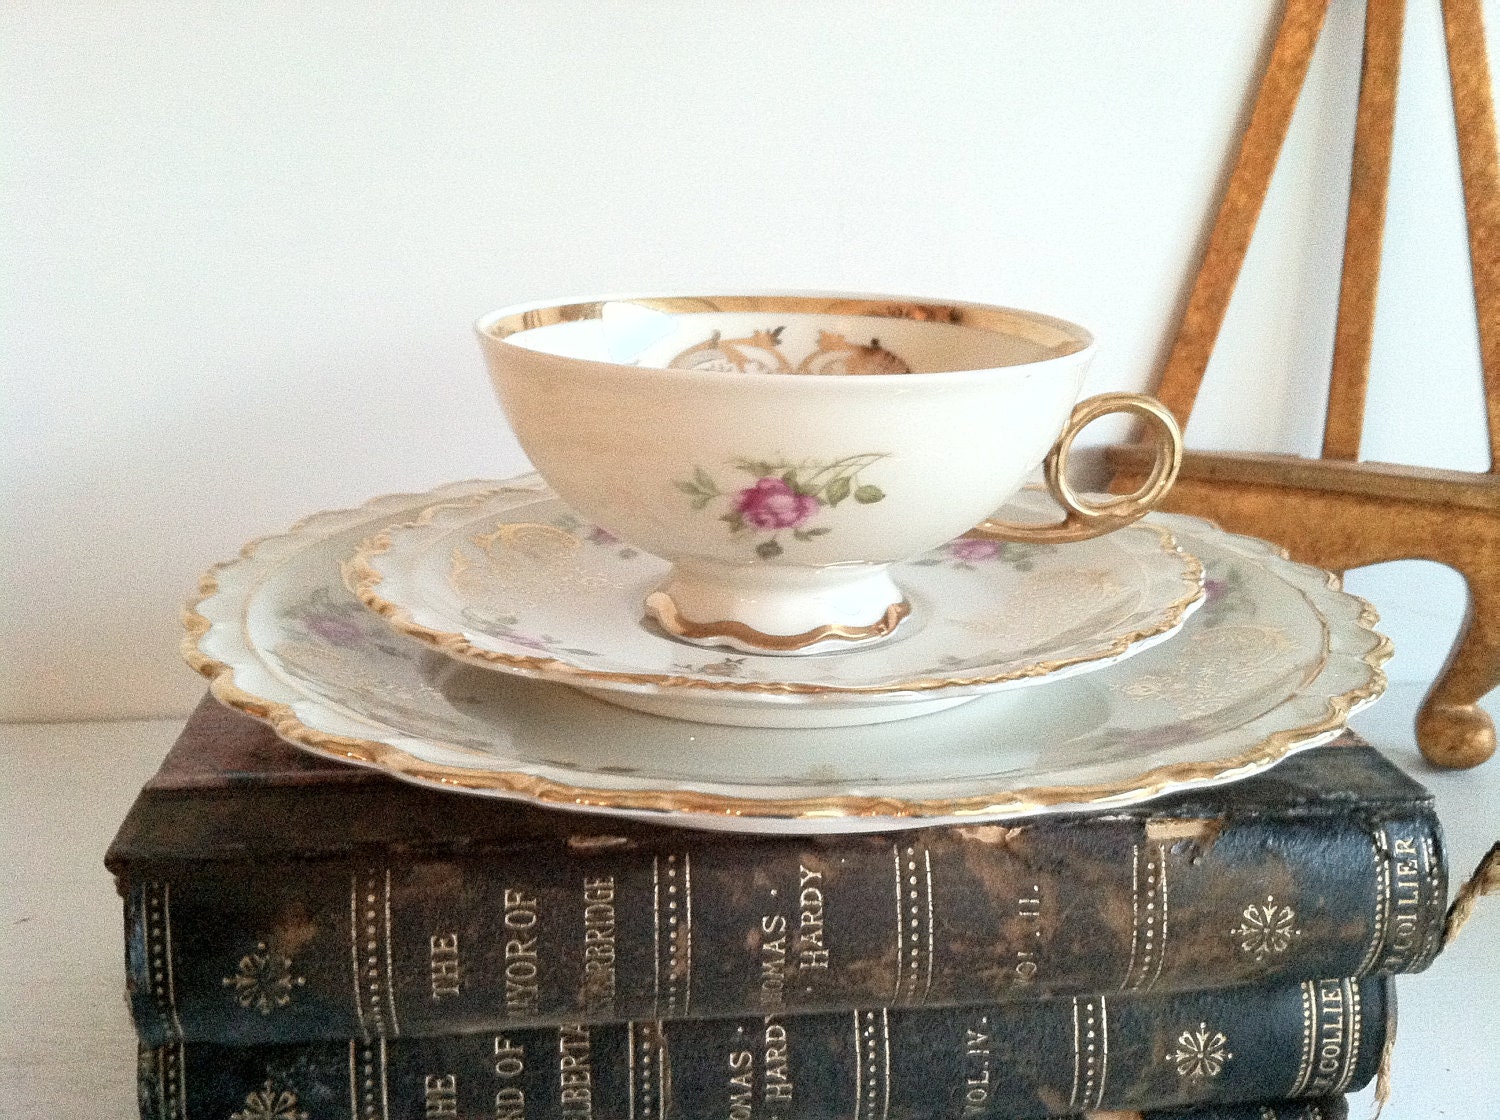 Sale - ROYAL HANOVER Porcelain Bavaria Germany HMS Tea // Roses //Vintage China Set // Cottage Chic // Pink Roses